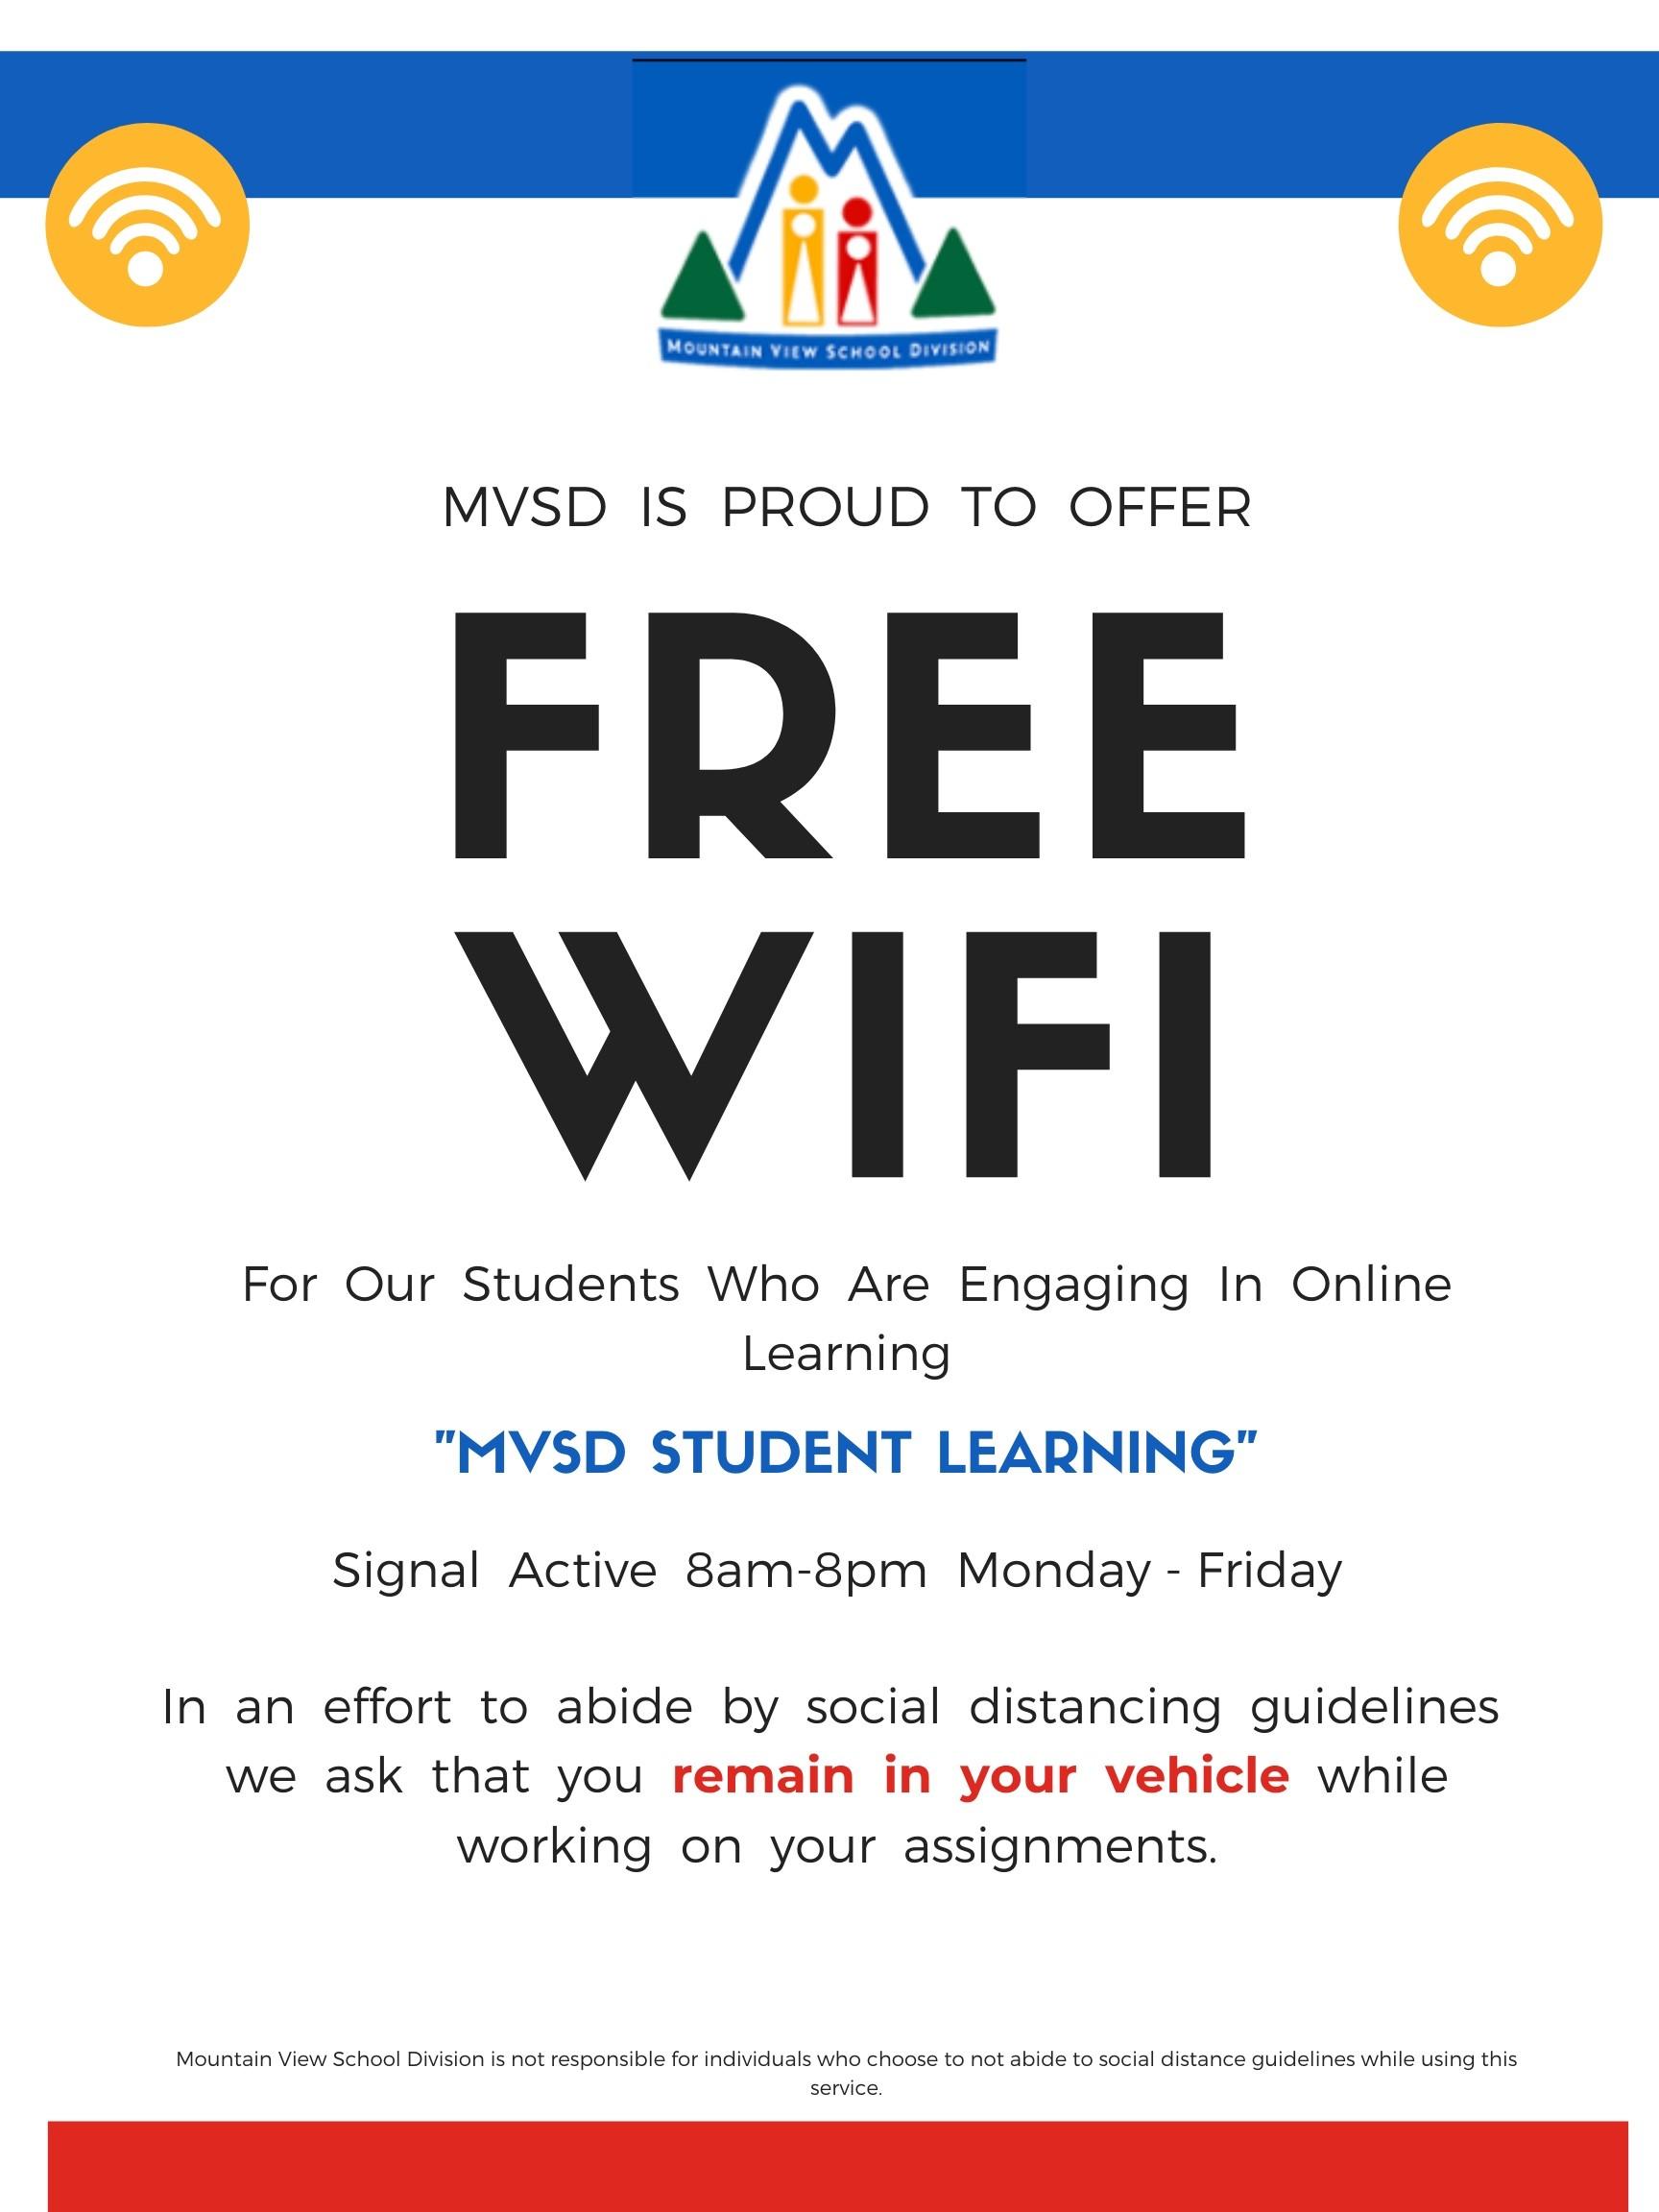 MVSD Free WiFi